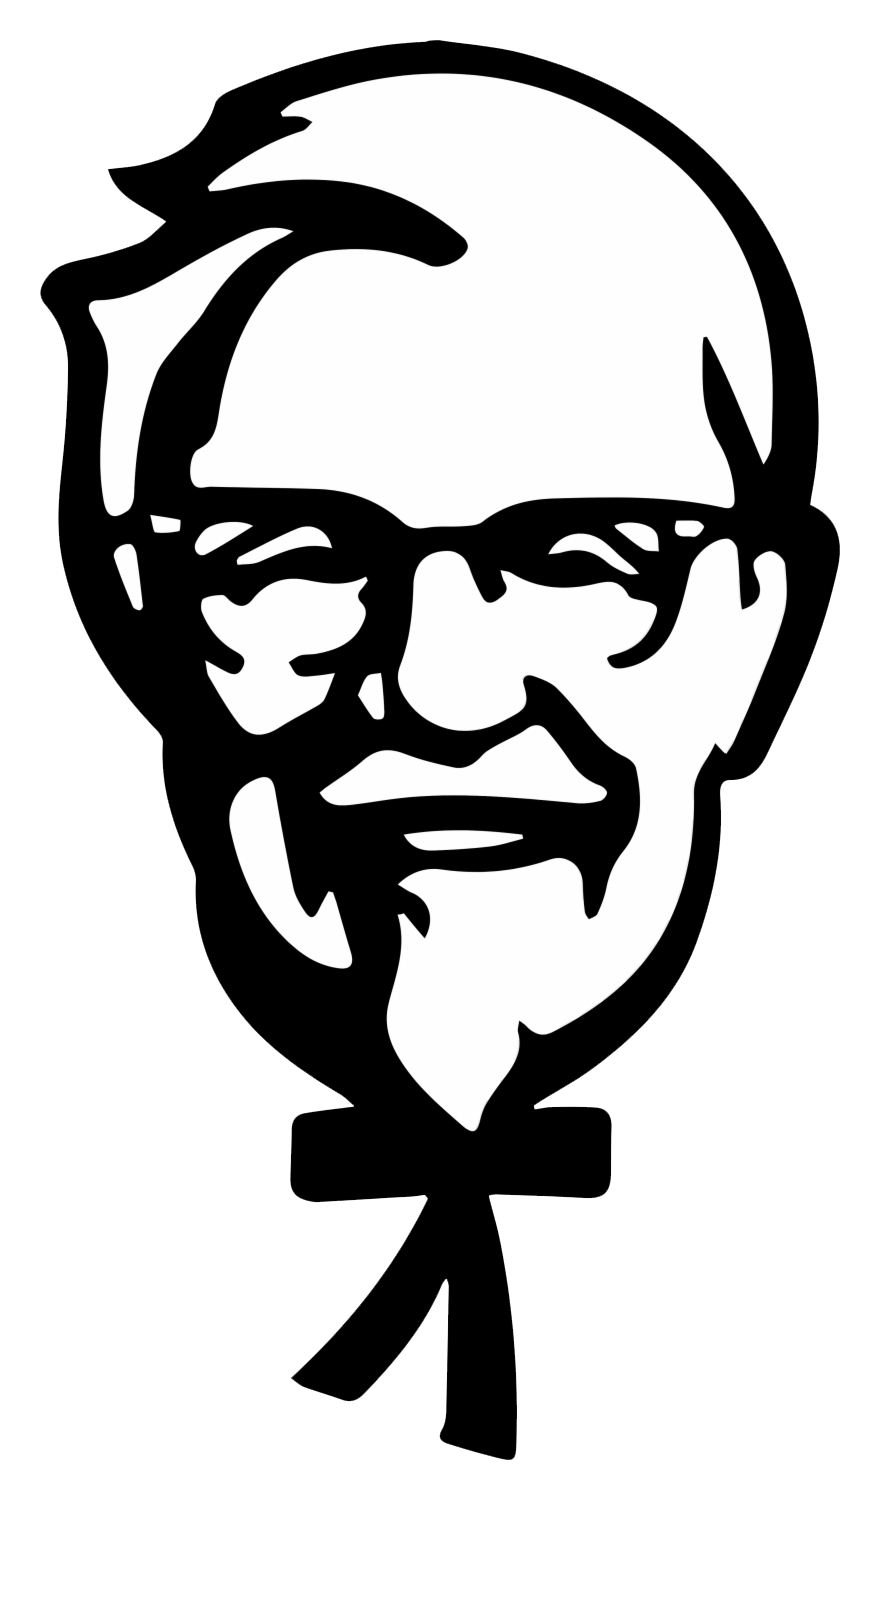 KFC logo Gambar transparan